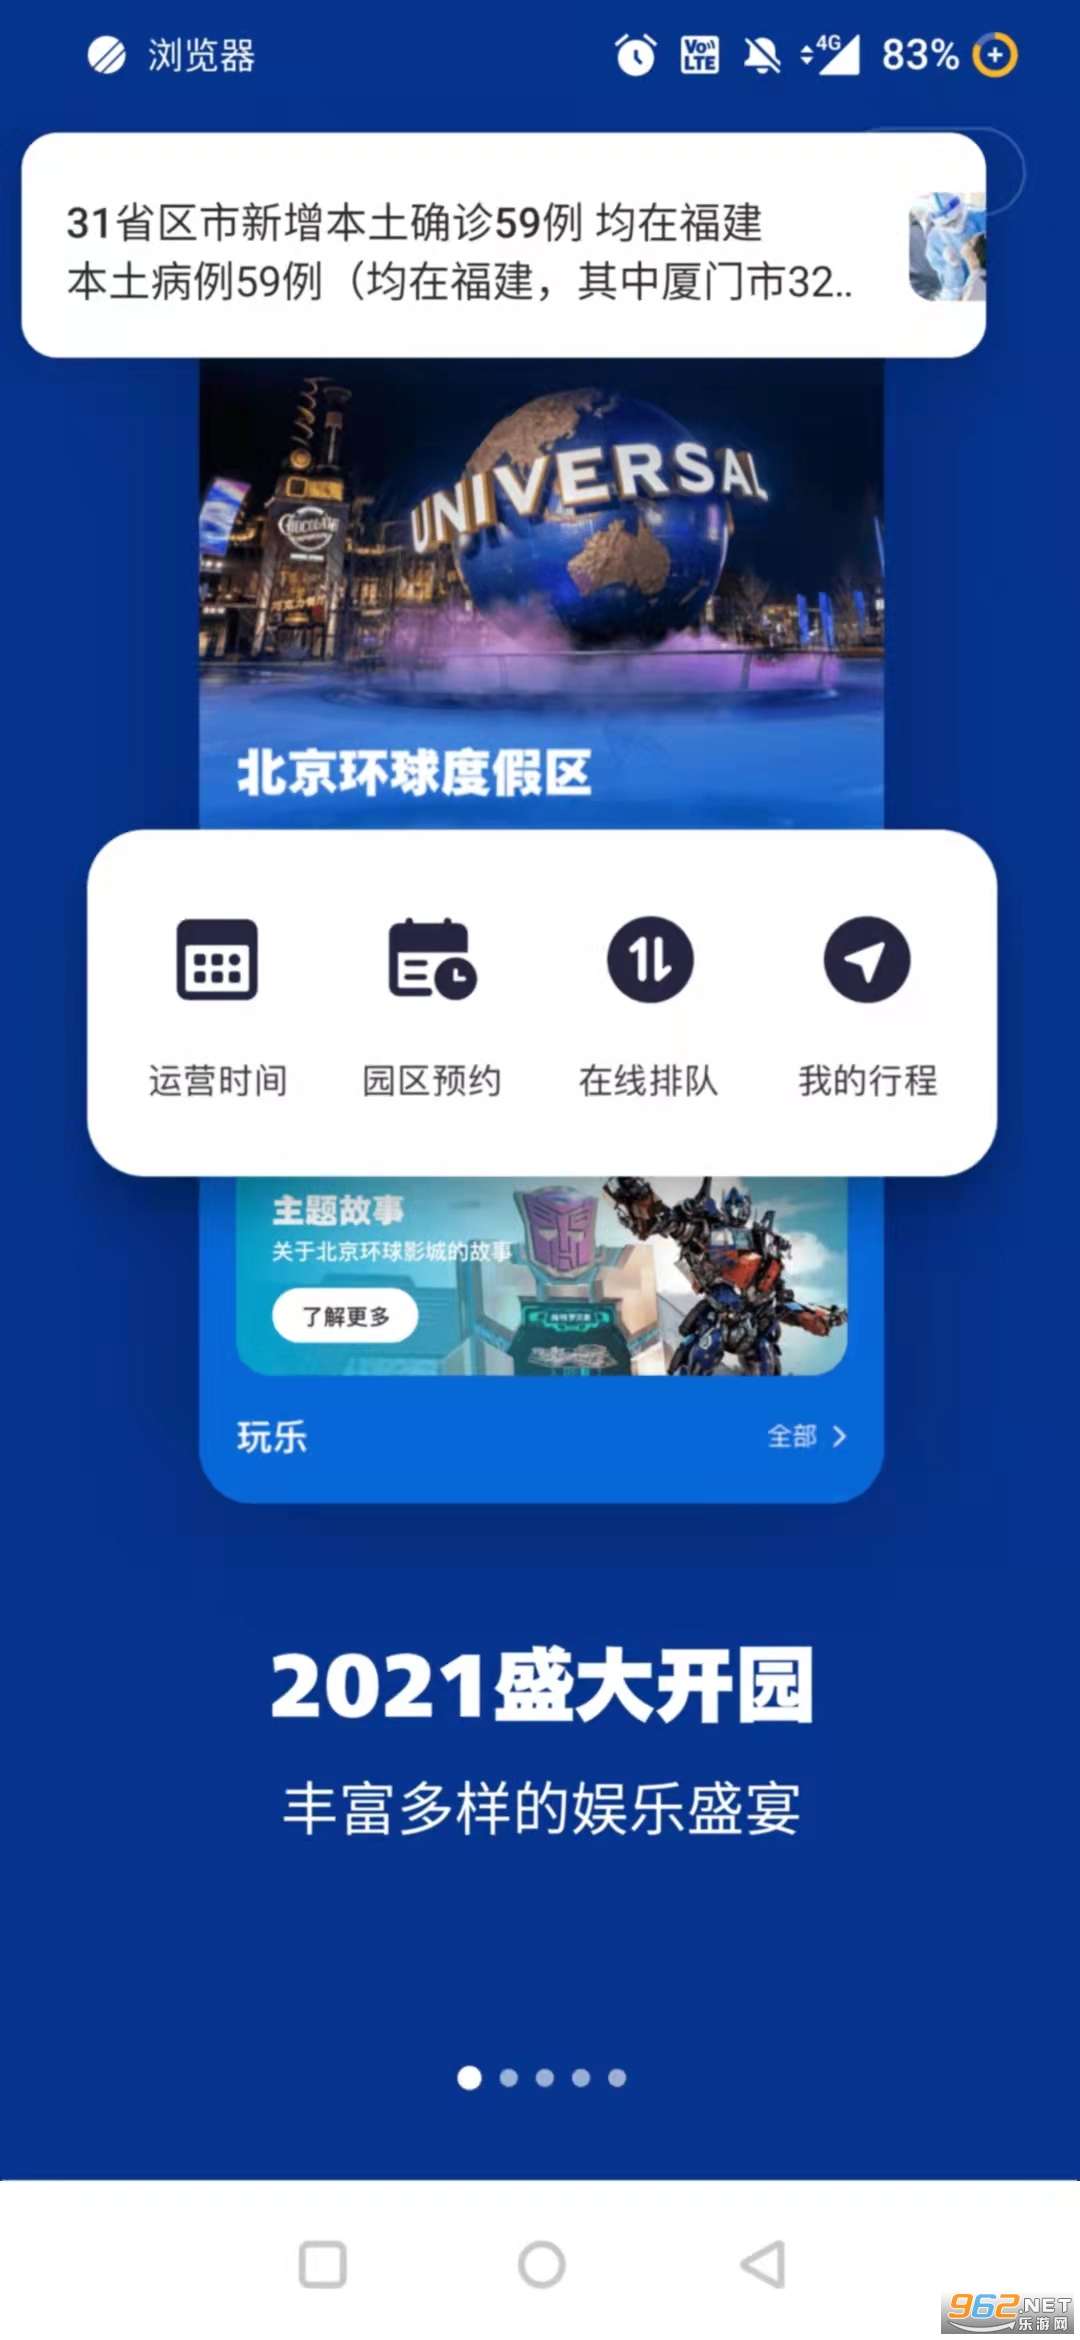 北京环球度假区appv3.2.2 (一票畅游北京环游影城)截图1